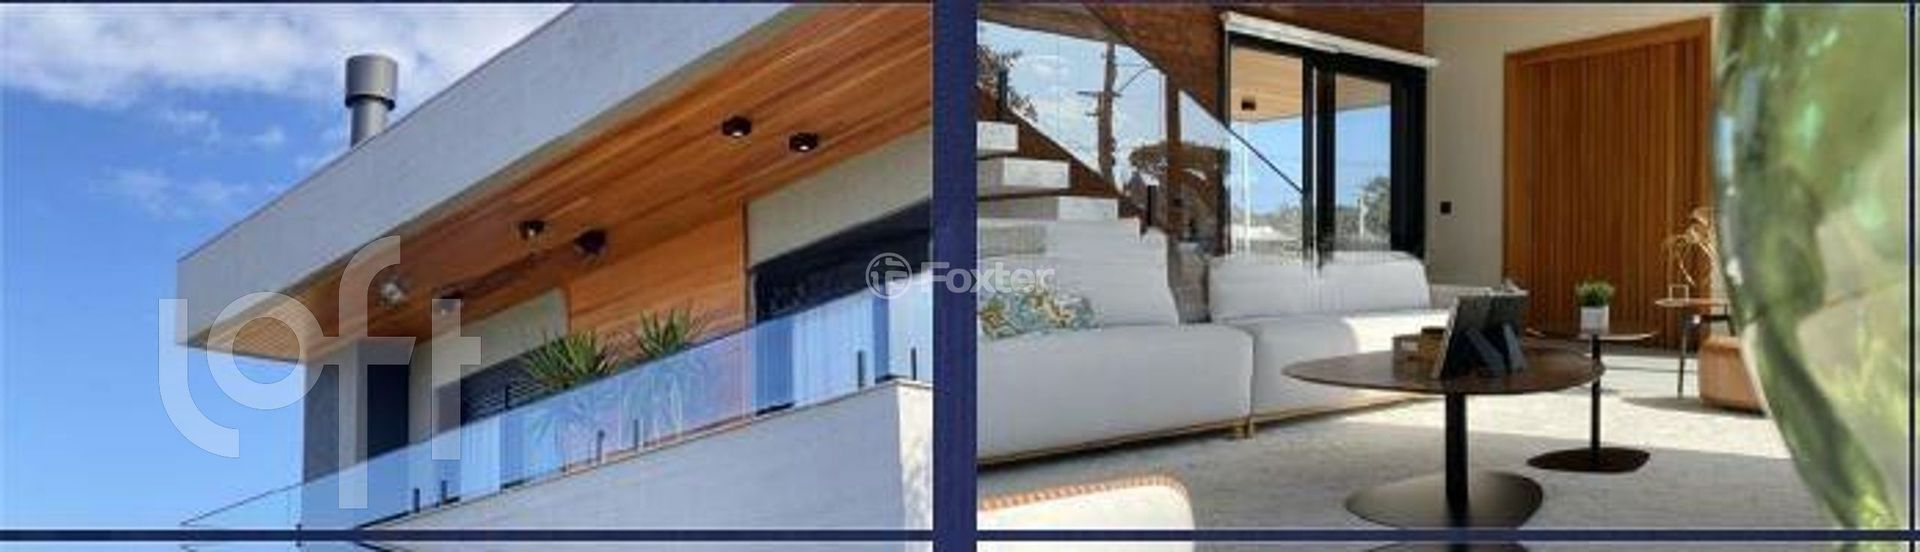 Casa em Condomínio 4 dorms à venda Rua Manoel Quadros, Centro - Capão da Canoa